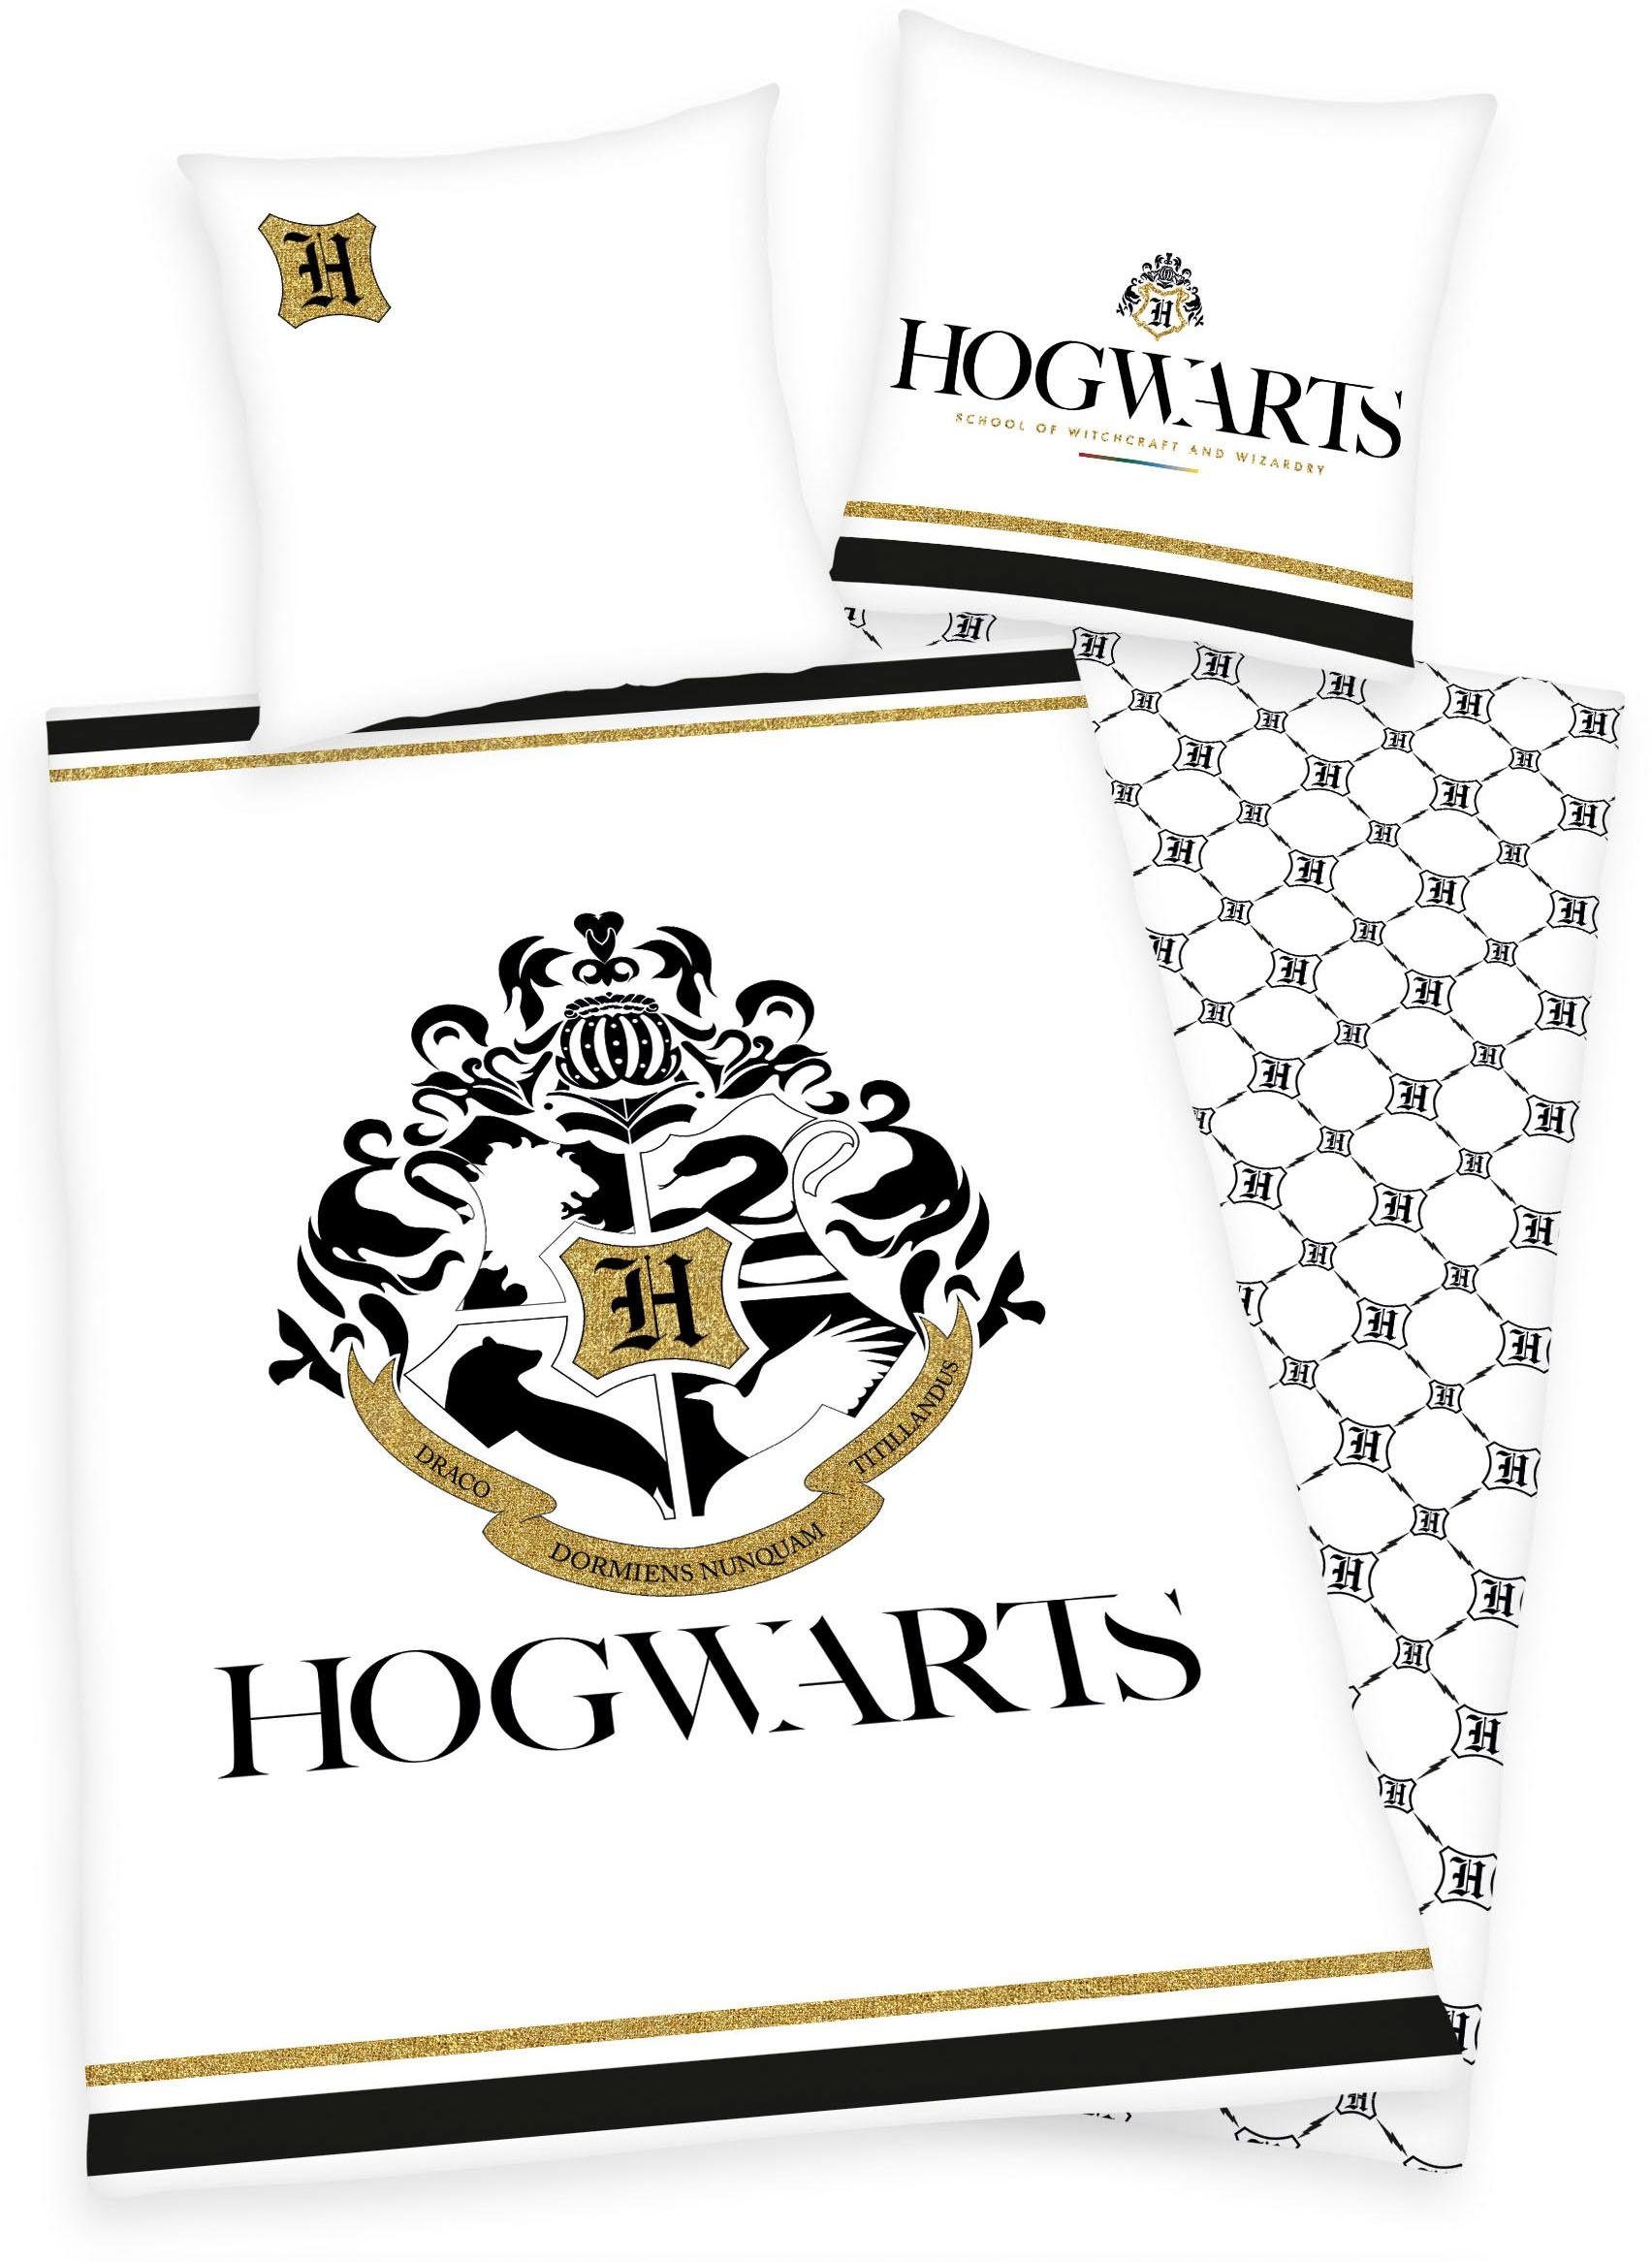 Wendebettwäsche Hogwarts, Renforcé, 2 teilig, mit Hogwarts Logo